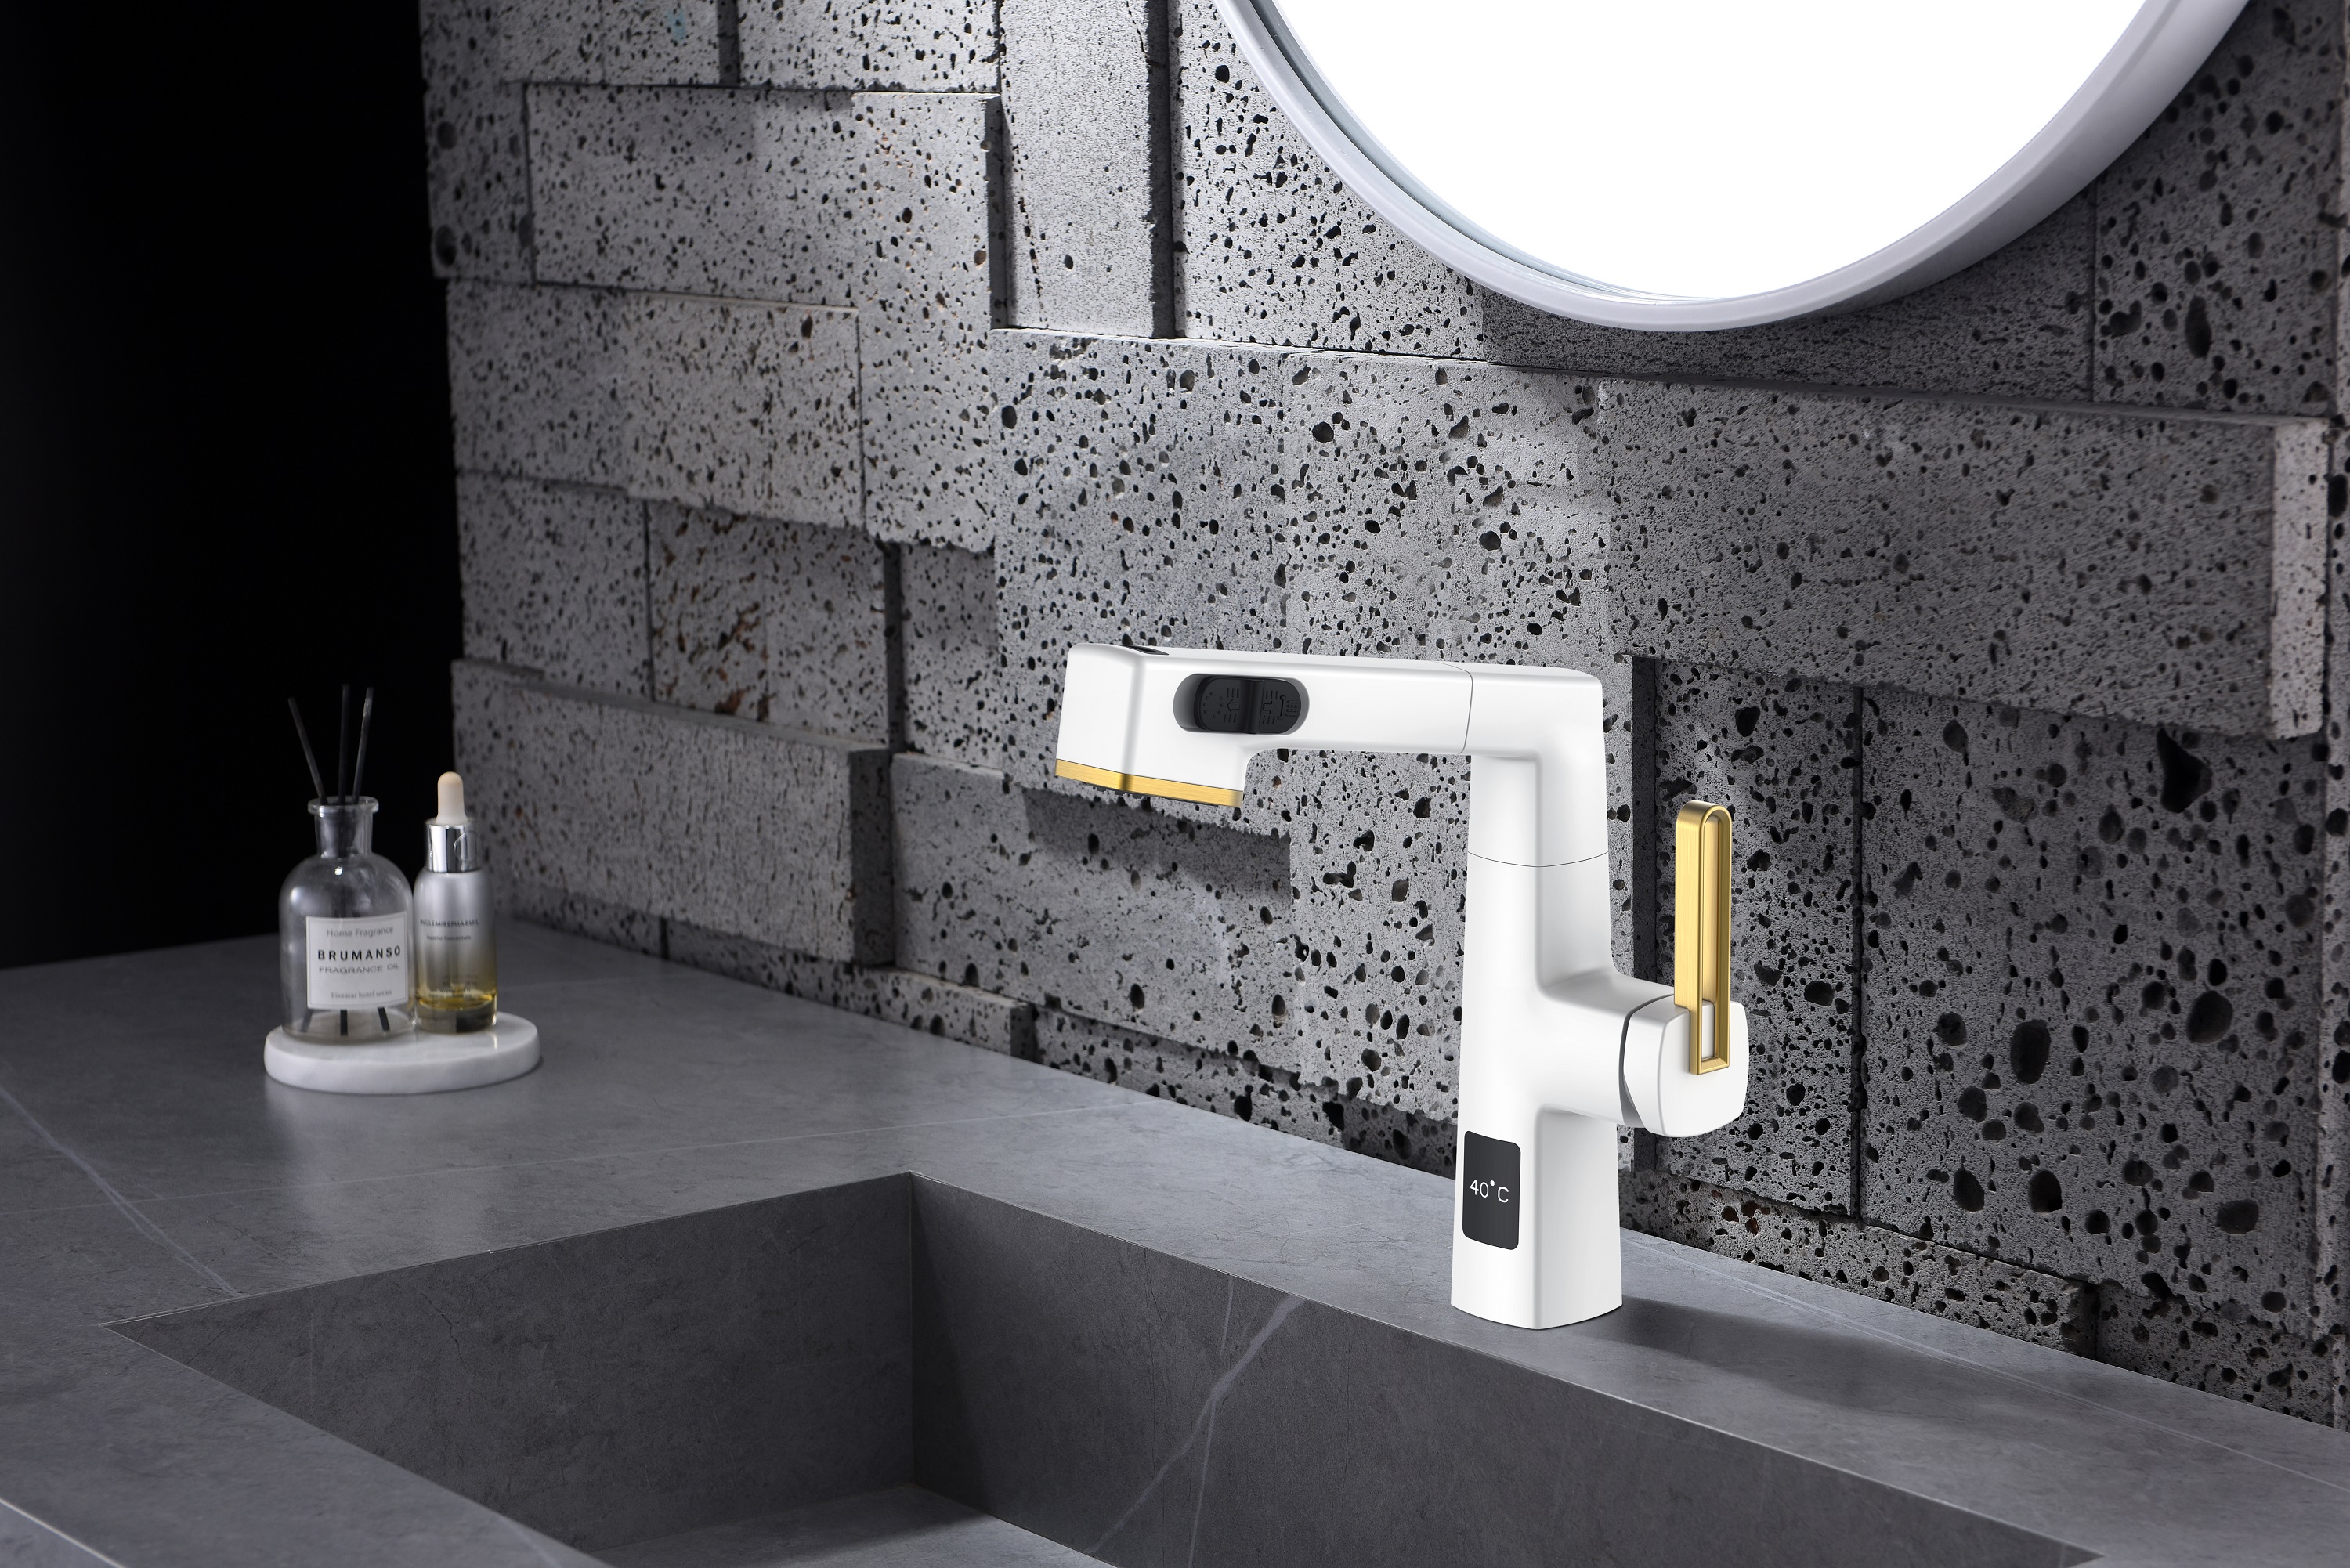  Visor de temperatura Design exclusivo Torneira de banheiro removível preta Altura ajustável